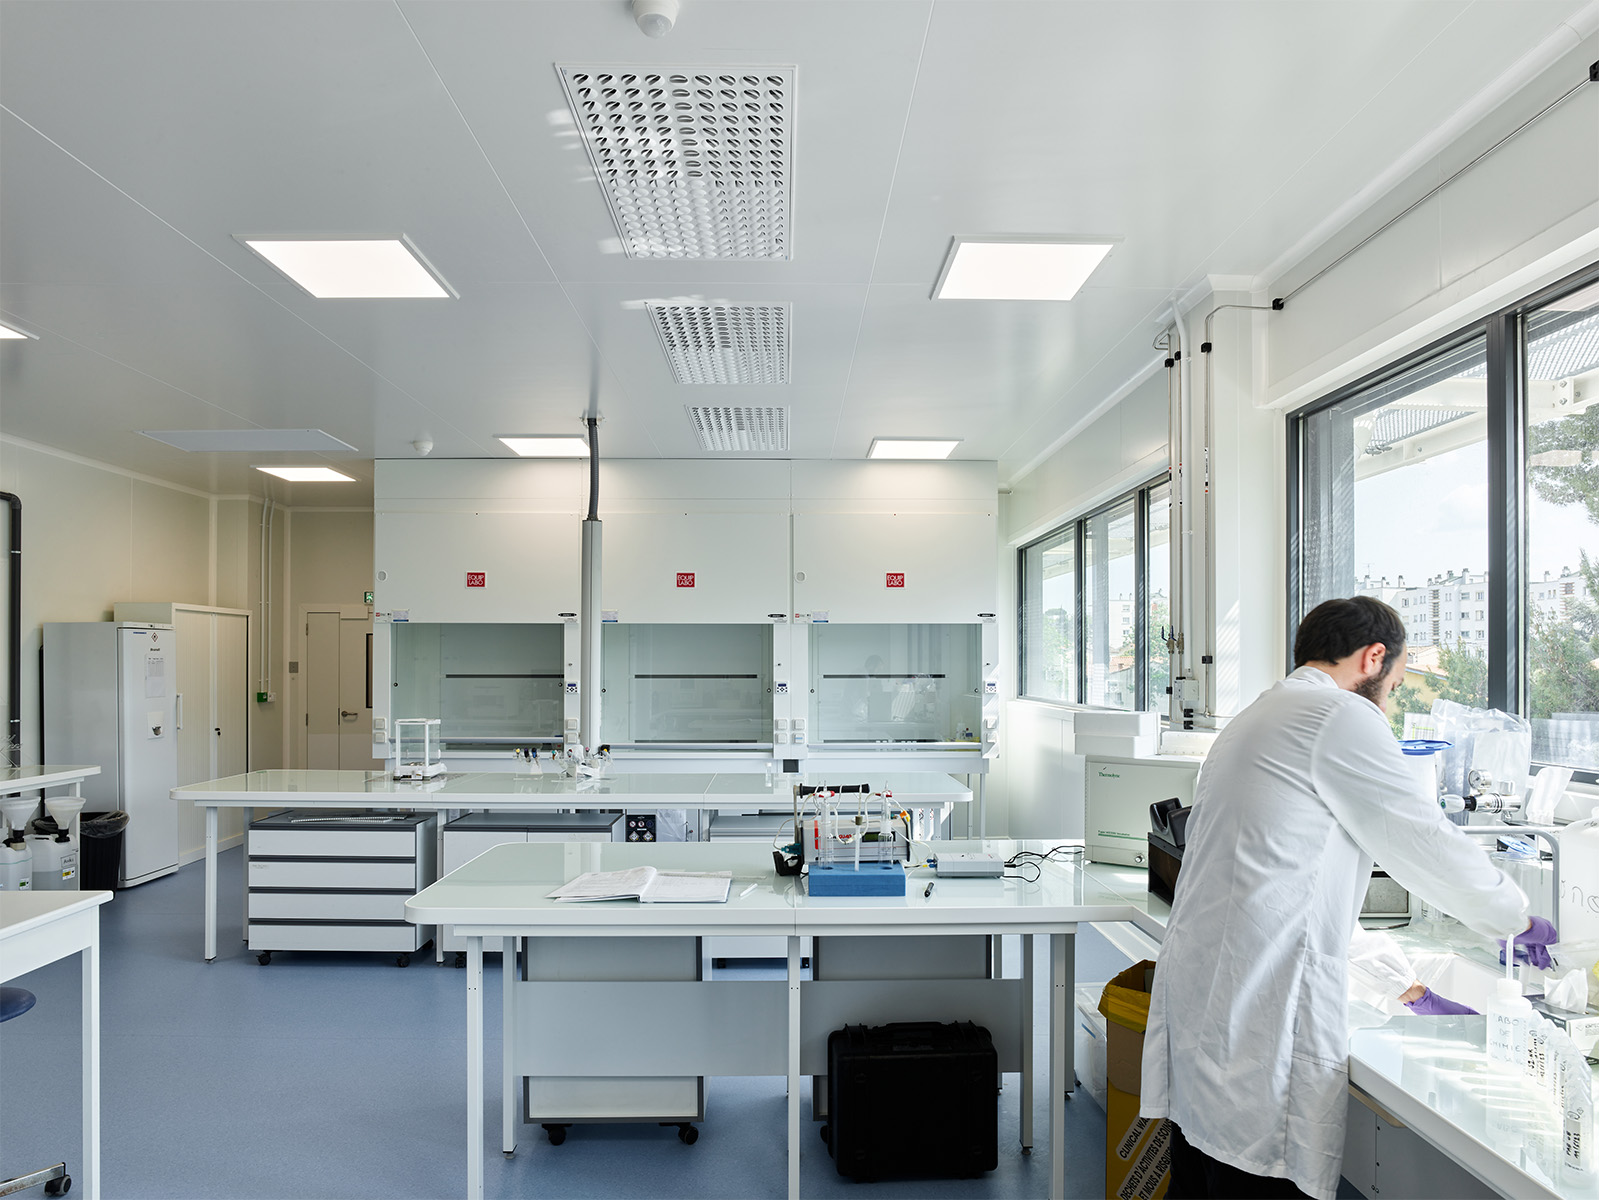  Photographie d'un laboratoire avec une personne travaillant en blouse blanche, sol bleu gris et mur et plafond blanc, les fenêtres en bandeaux apportent beaucoup de lumière